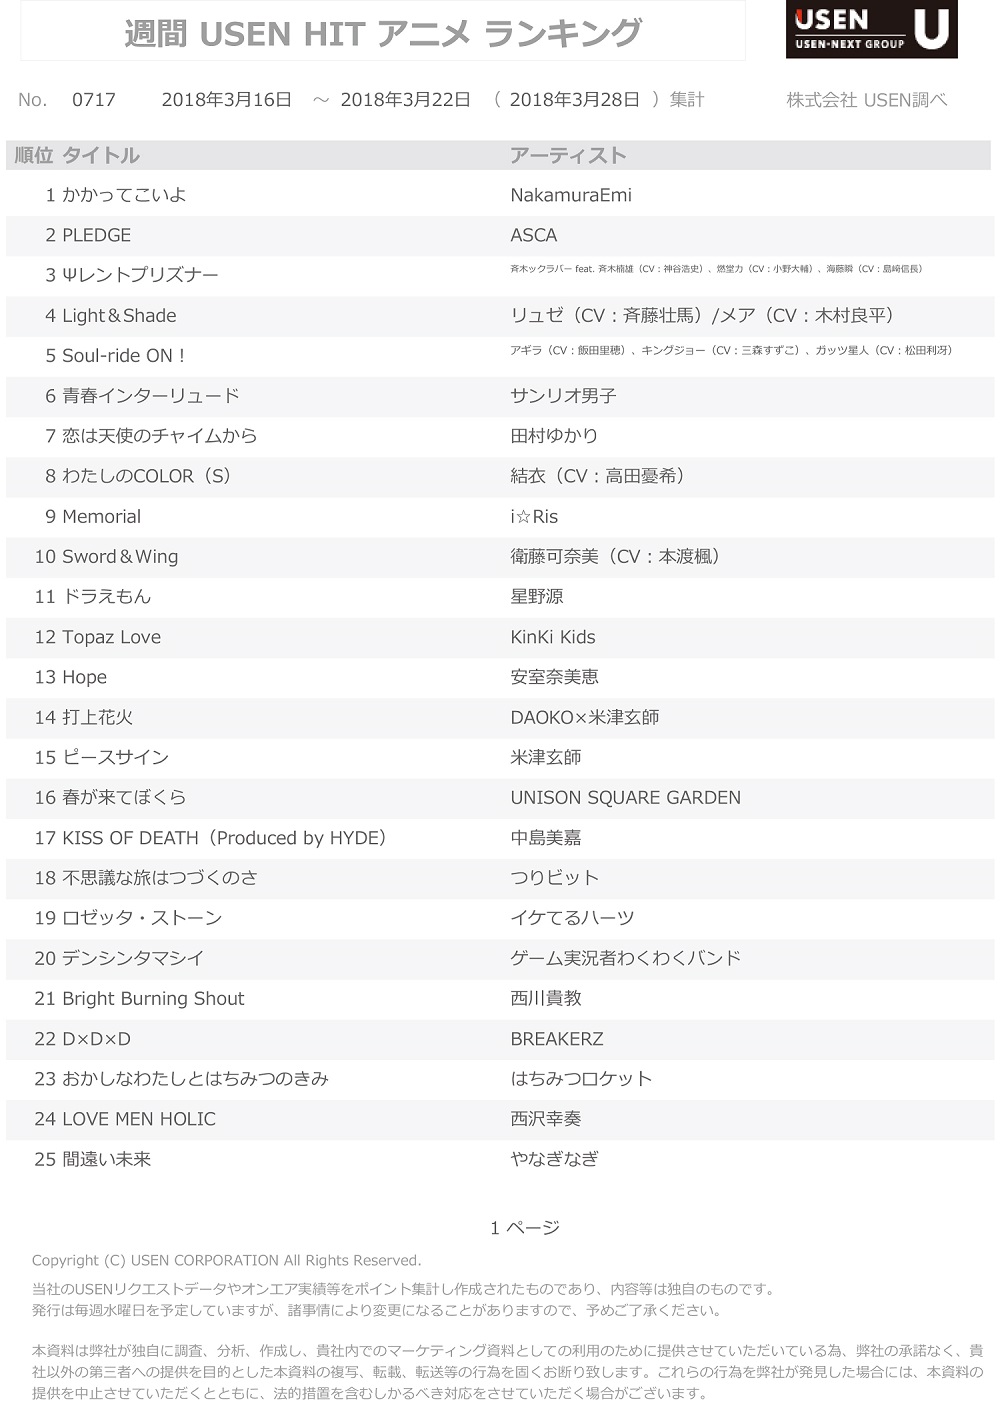 週間 Usen Hit アニメランキング Top10曲中8曲が初登場 Seigura Com